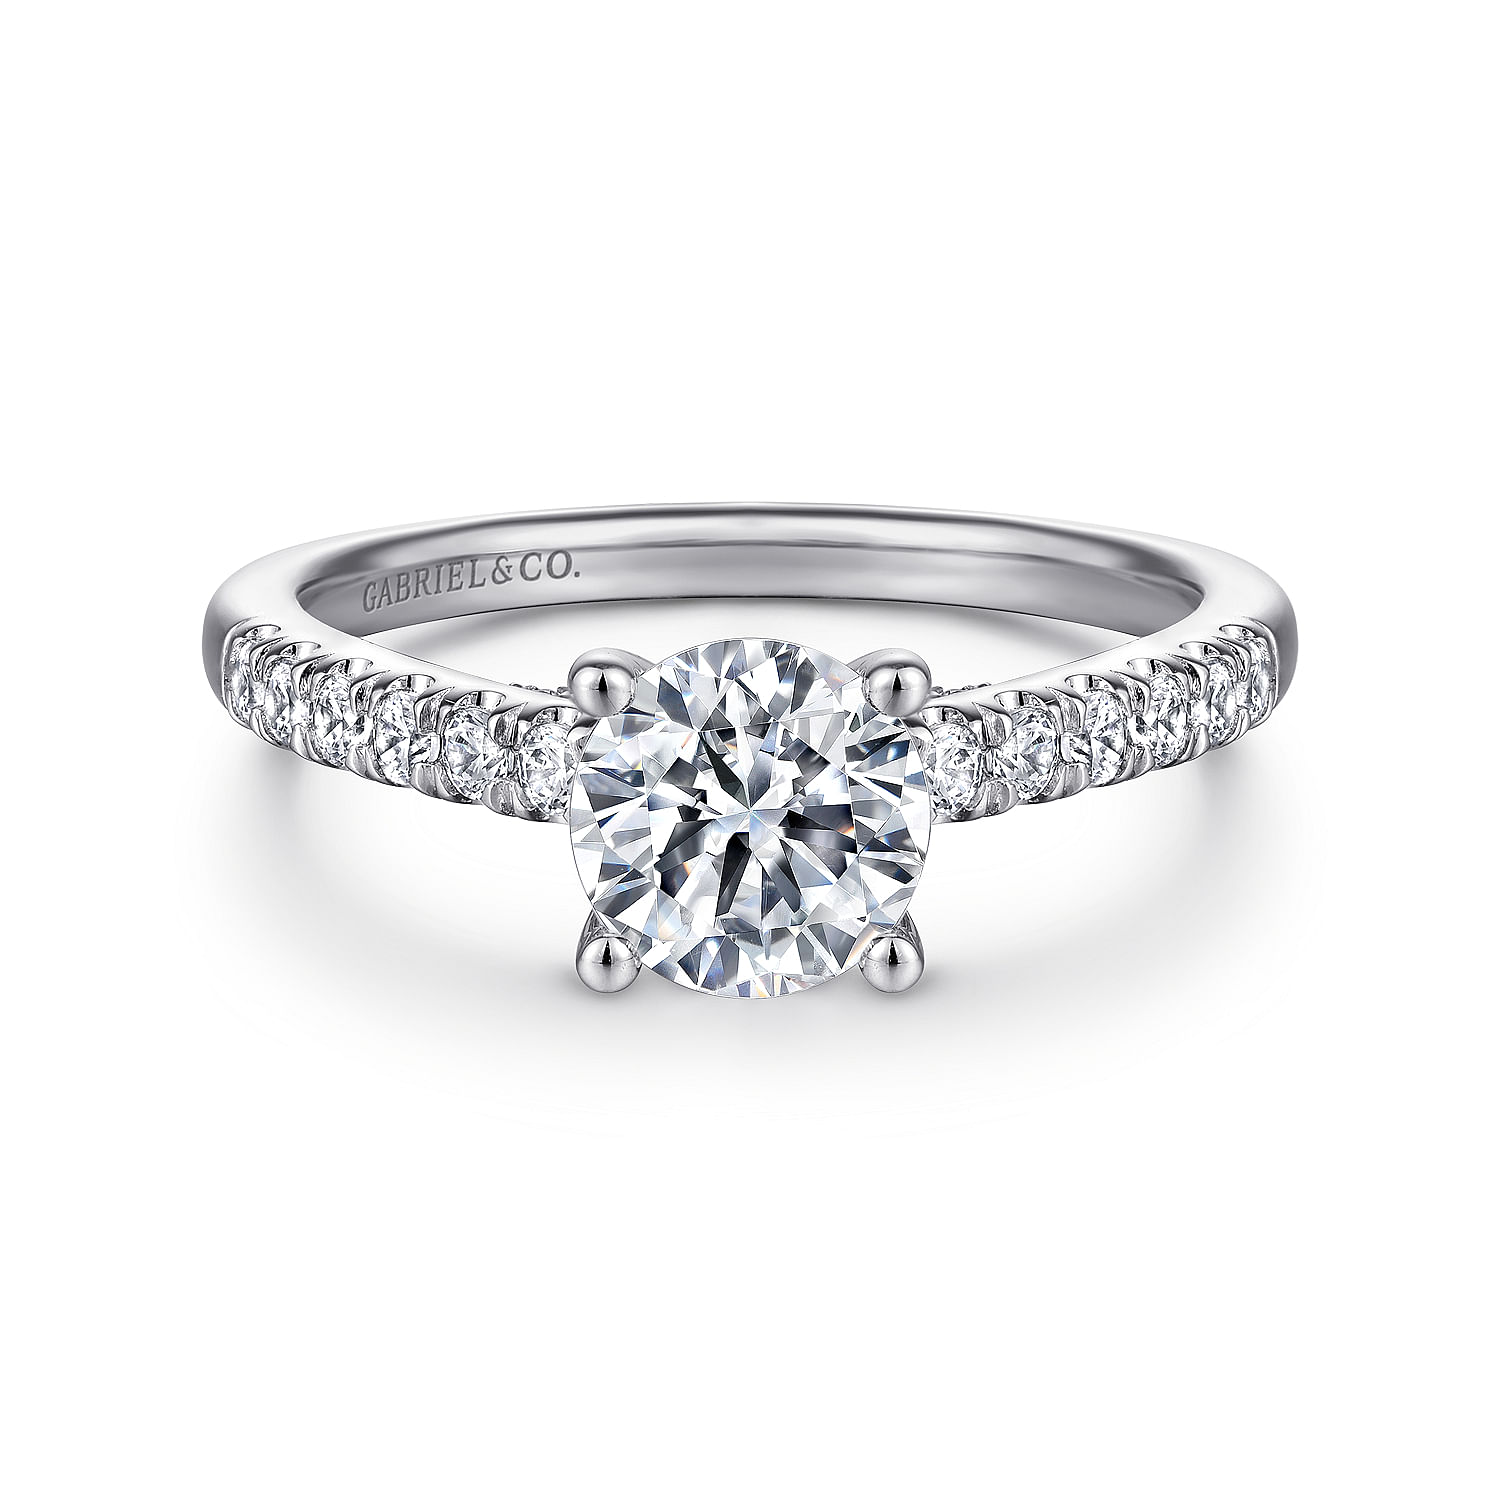 Jones---14K-White-Gold-Round-Diamond-Engagement-Ring1